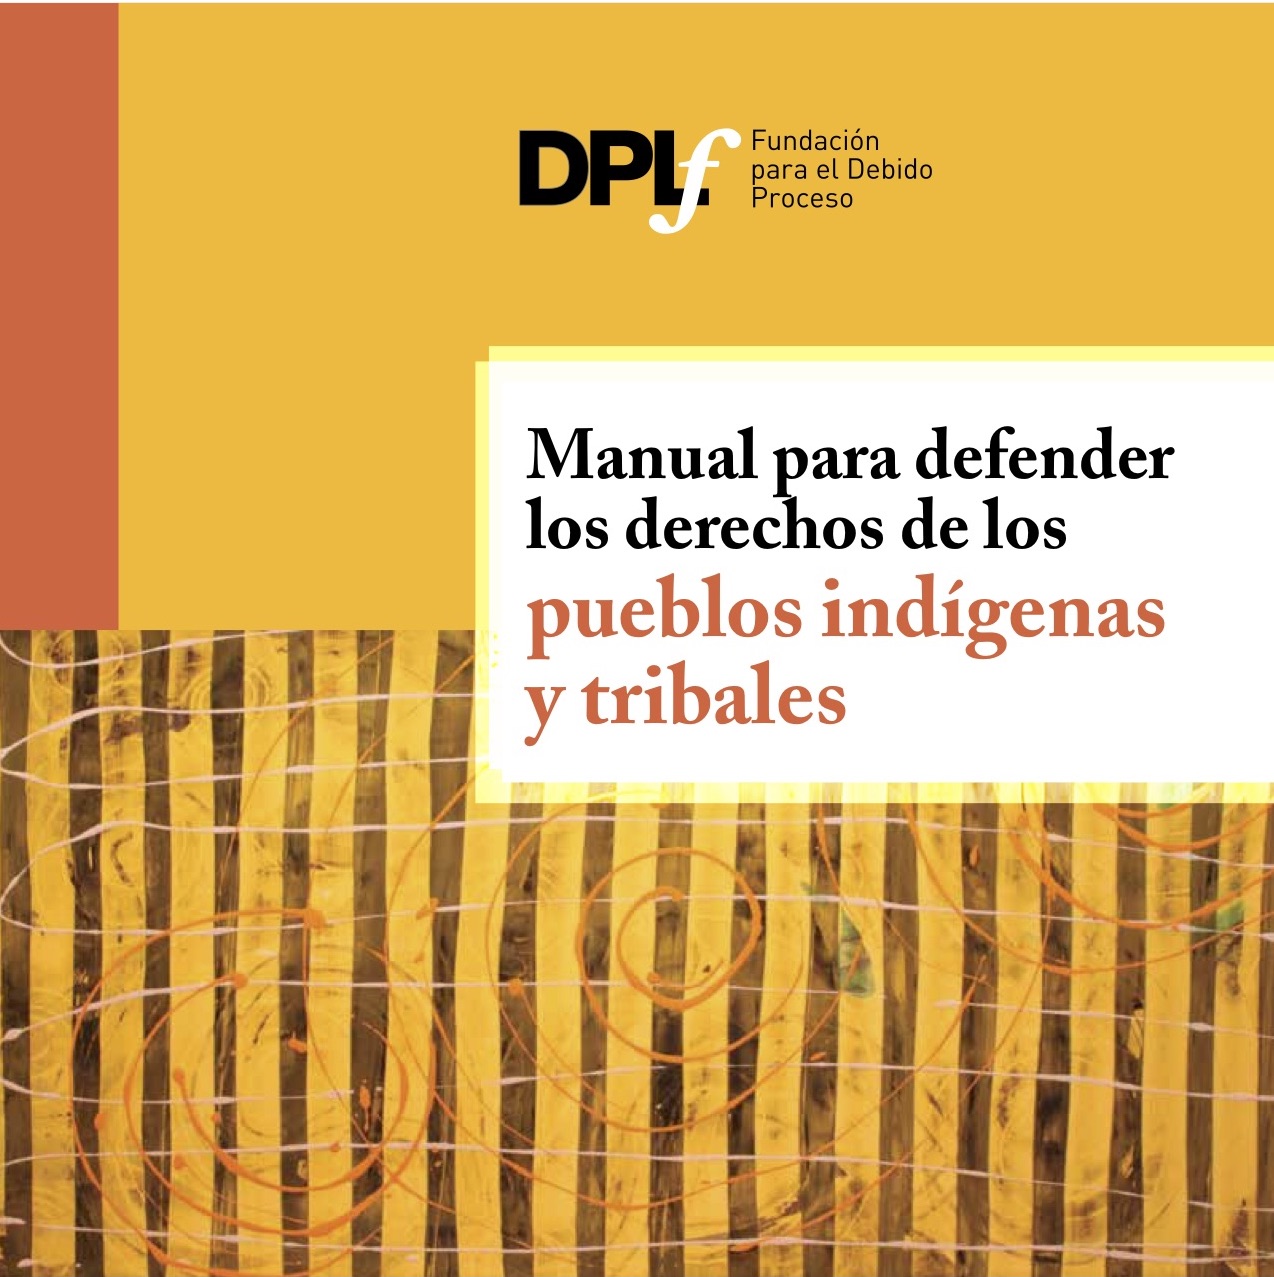 Manual para defender los derechos de los pueblos indígenas y tribales